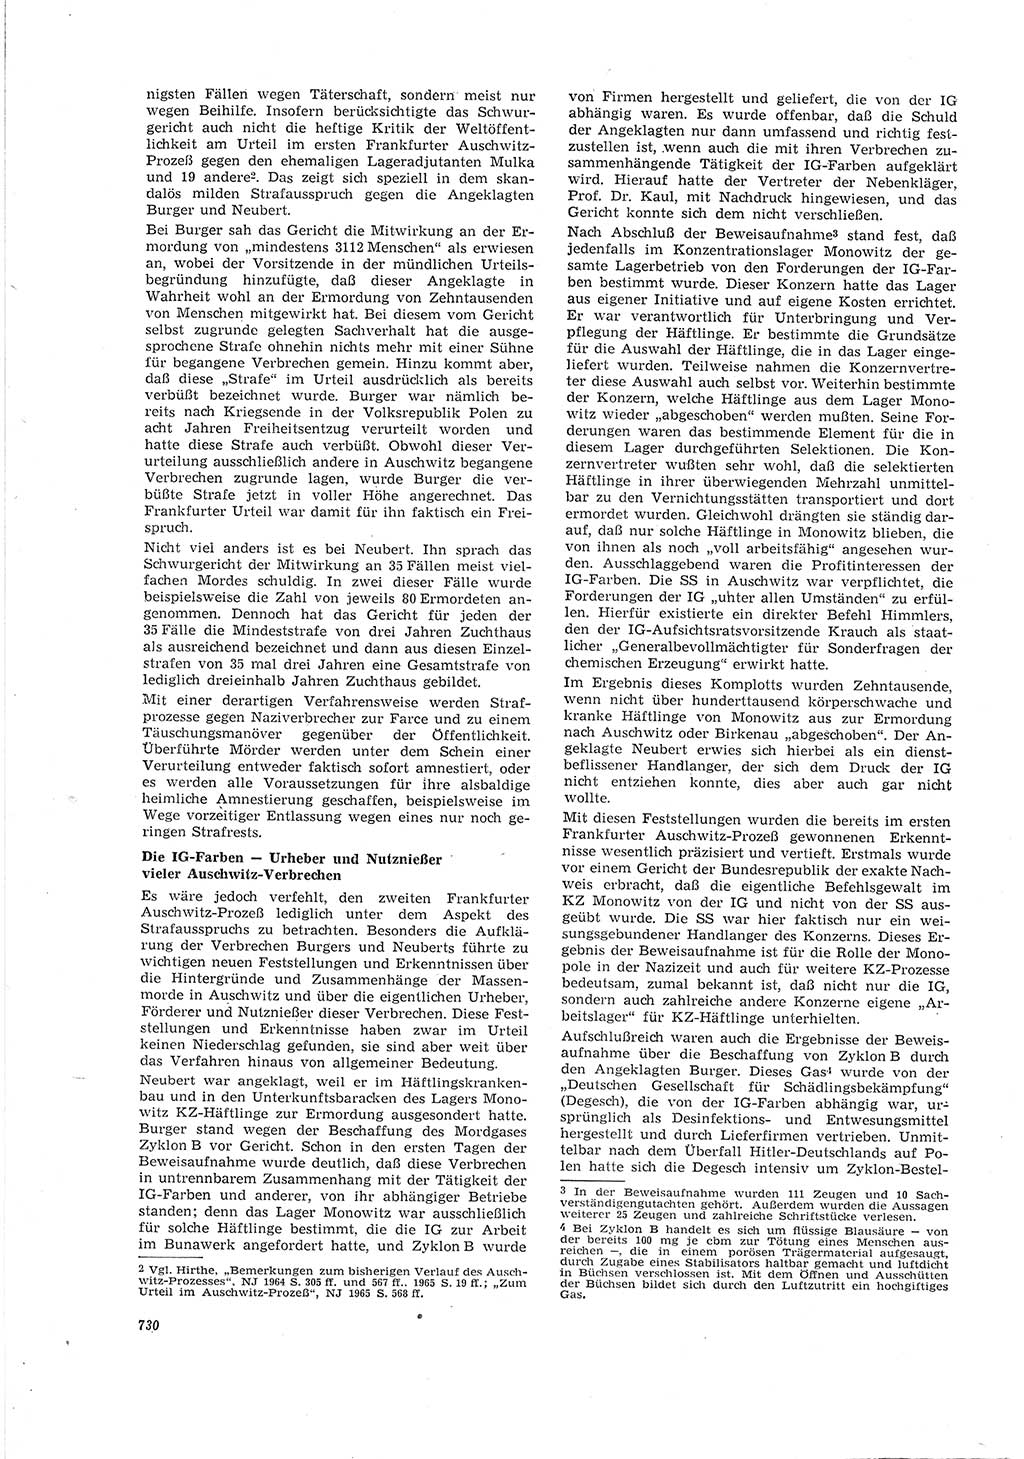 Neue Justiz (NJ), Zeitschrift für Recht und Rechtswissenschaft [Deutsche Demokratische Republik (DDR)], 20. Jahrgang 1966, Seite 730 (NJ DDR 1966, S. 730)